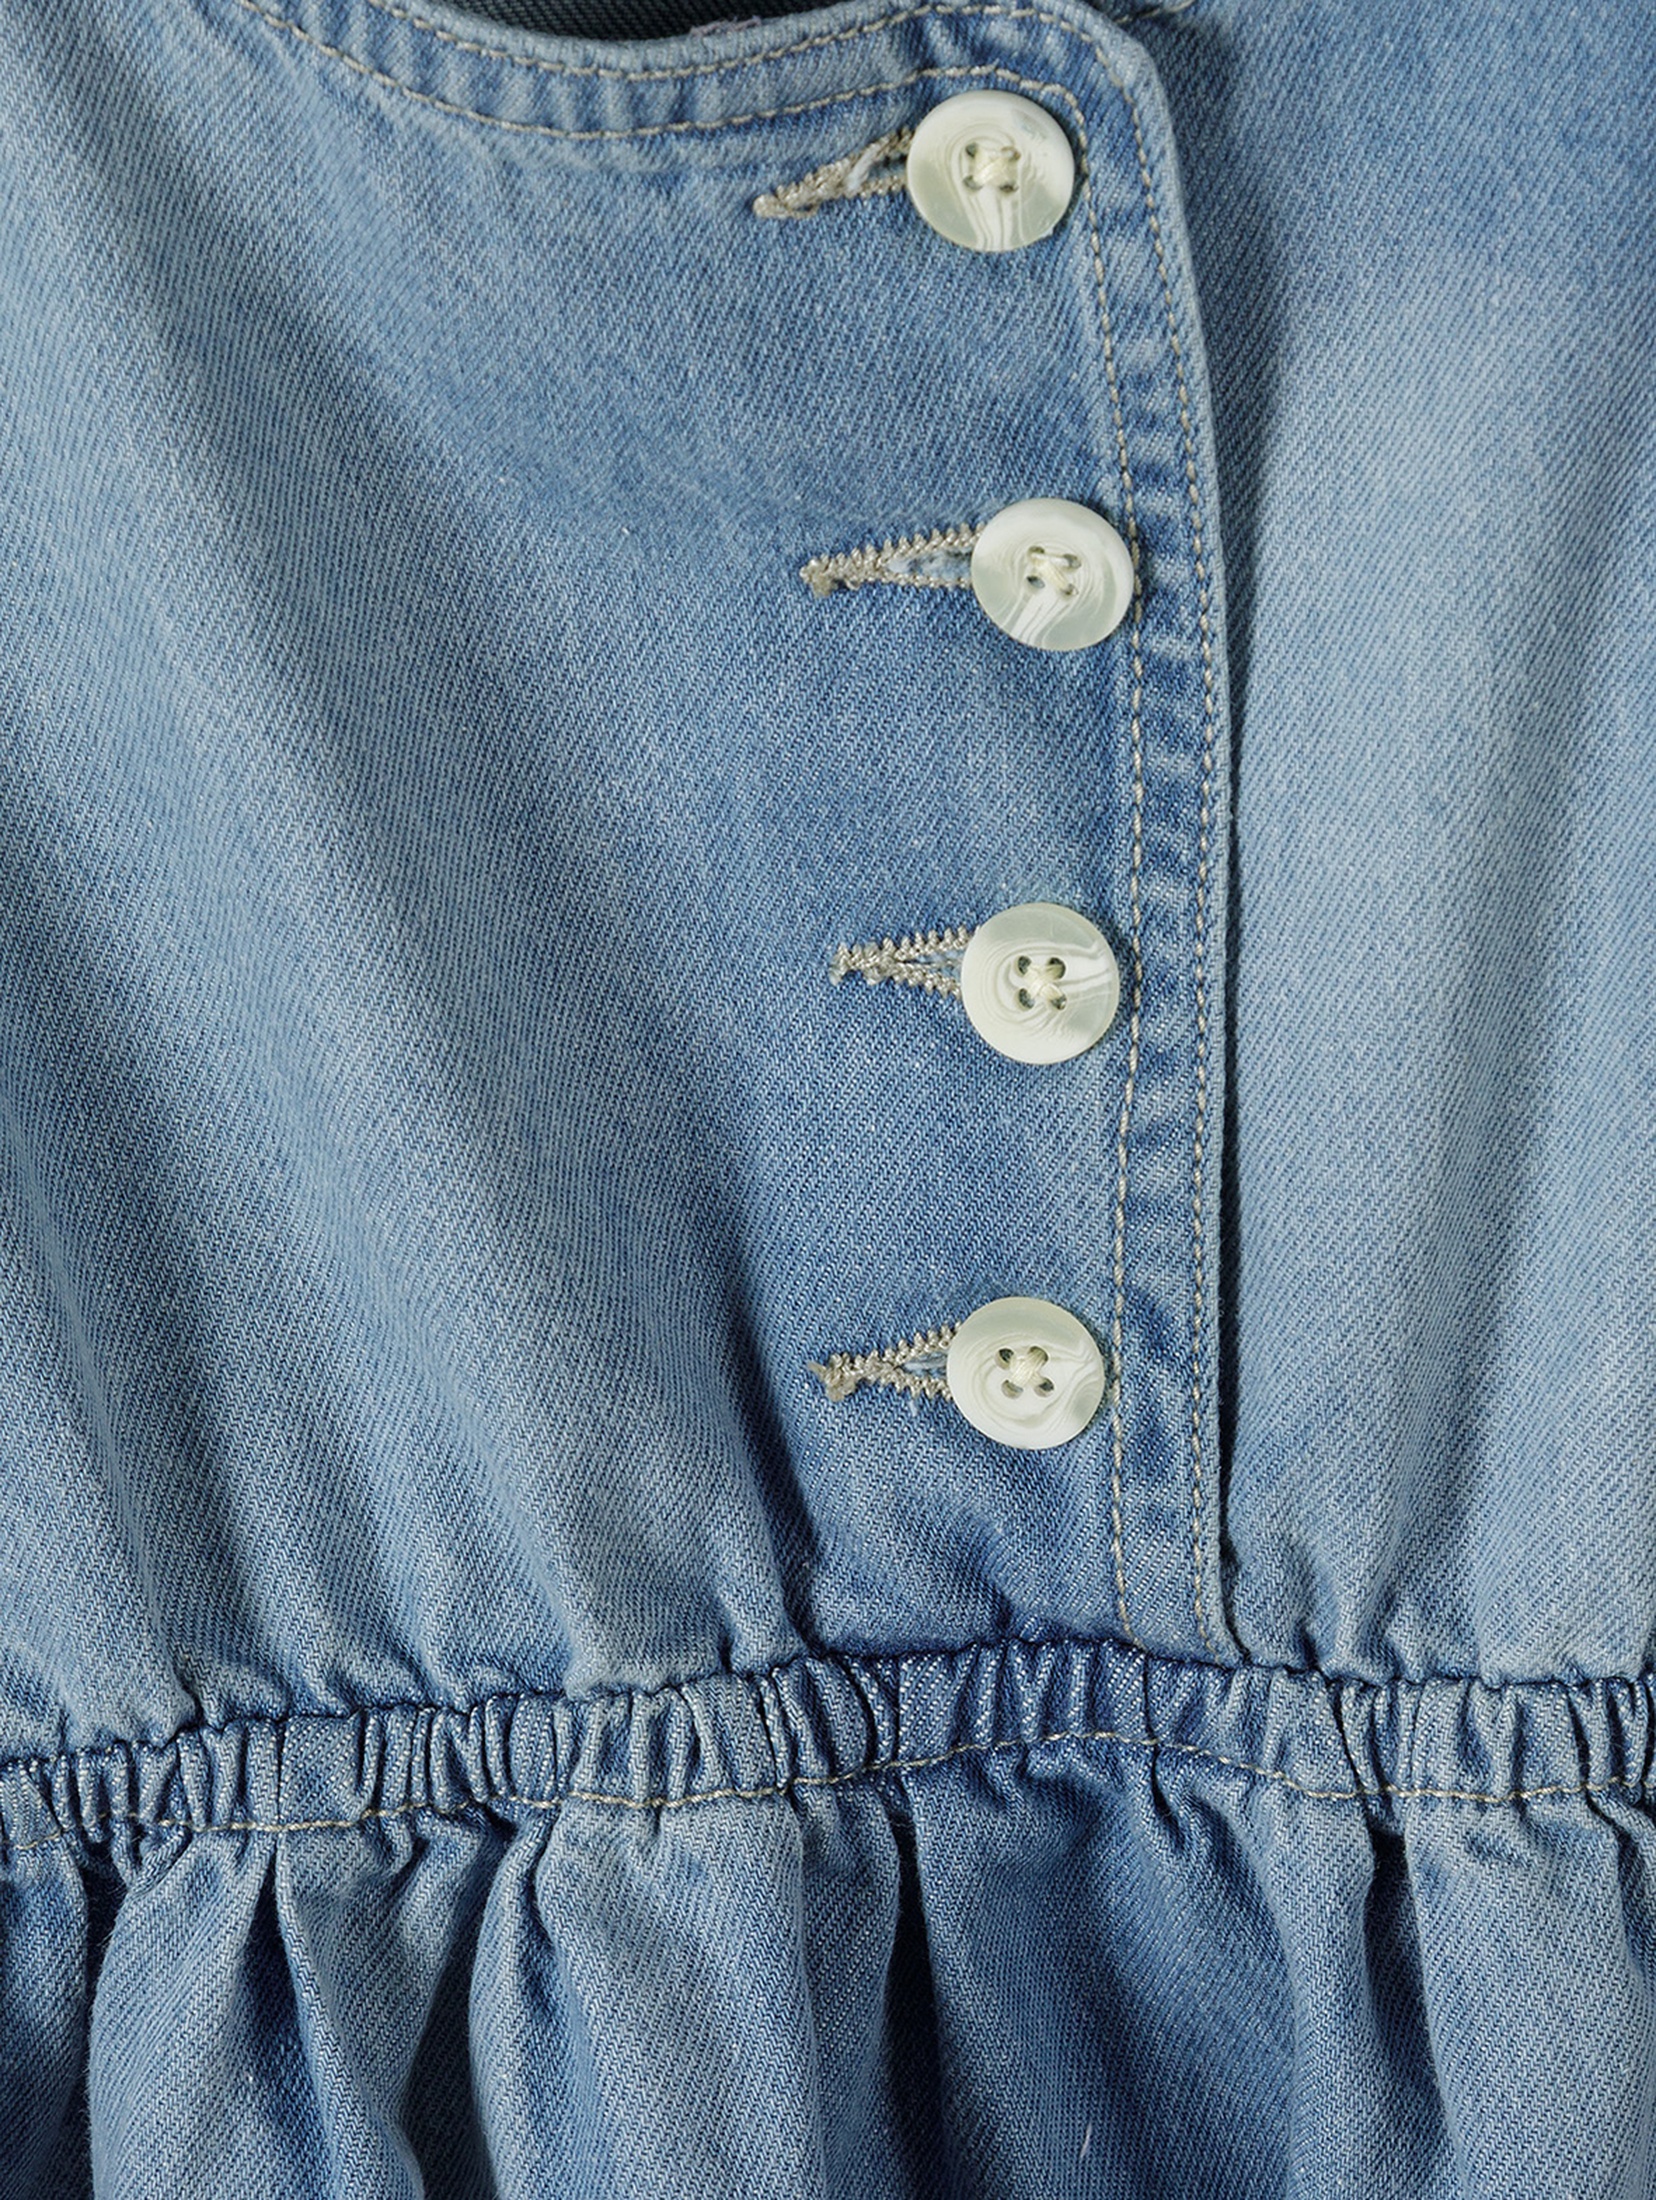 Jeansowa sukienka na ramiączka zapinana na guziki dziewczęca